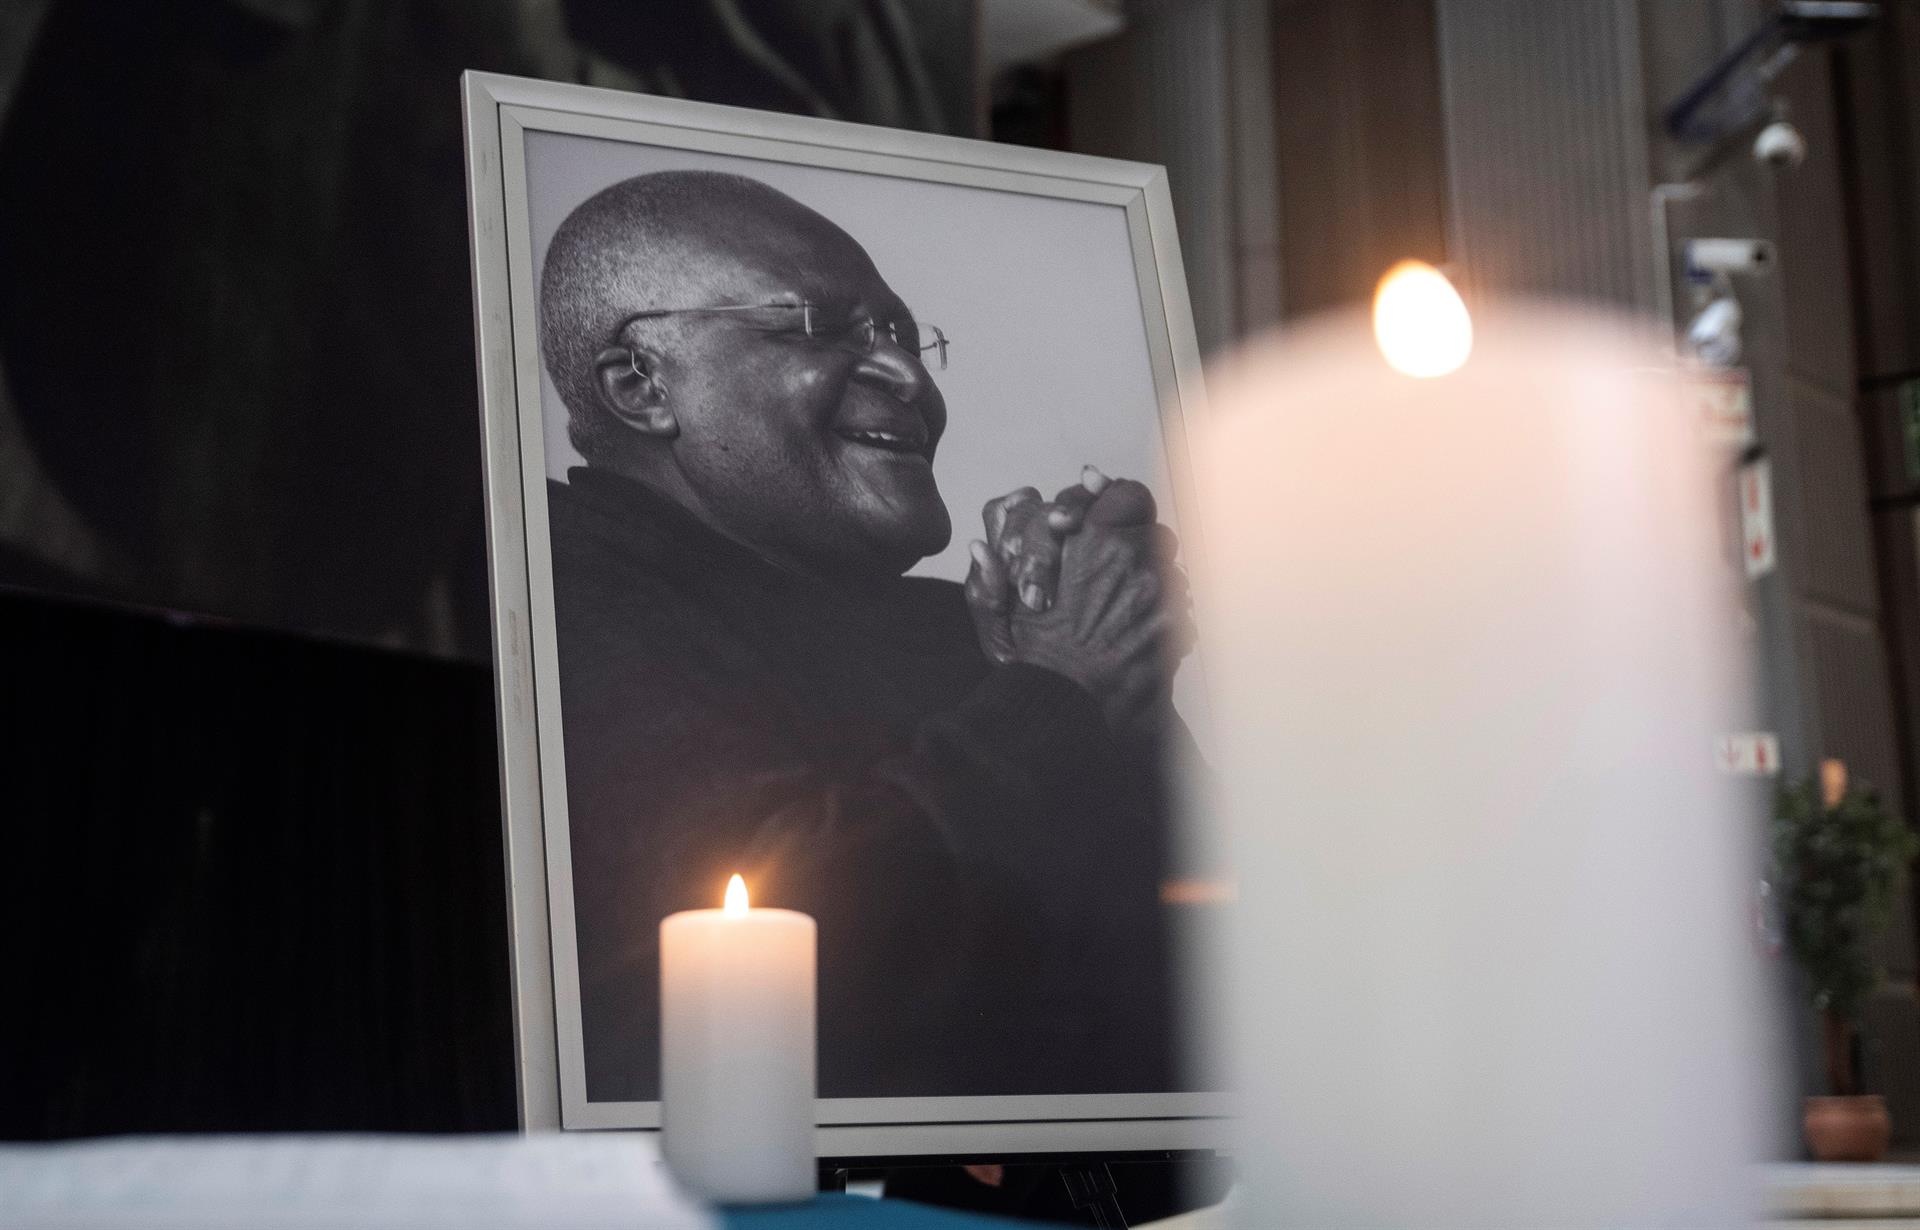 La ONU lamenta el fallecimiento de Desmond Tutu: “Una voz inquebrantable para los sin voz”